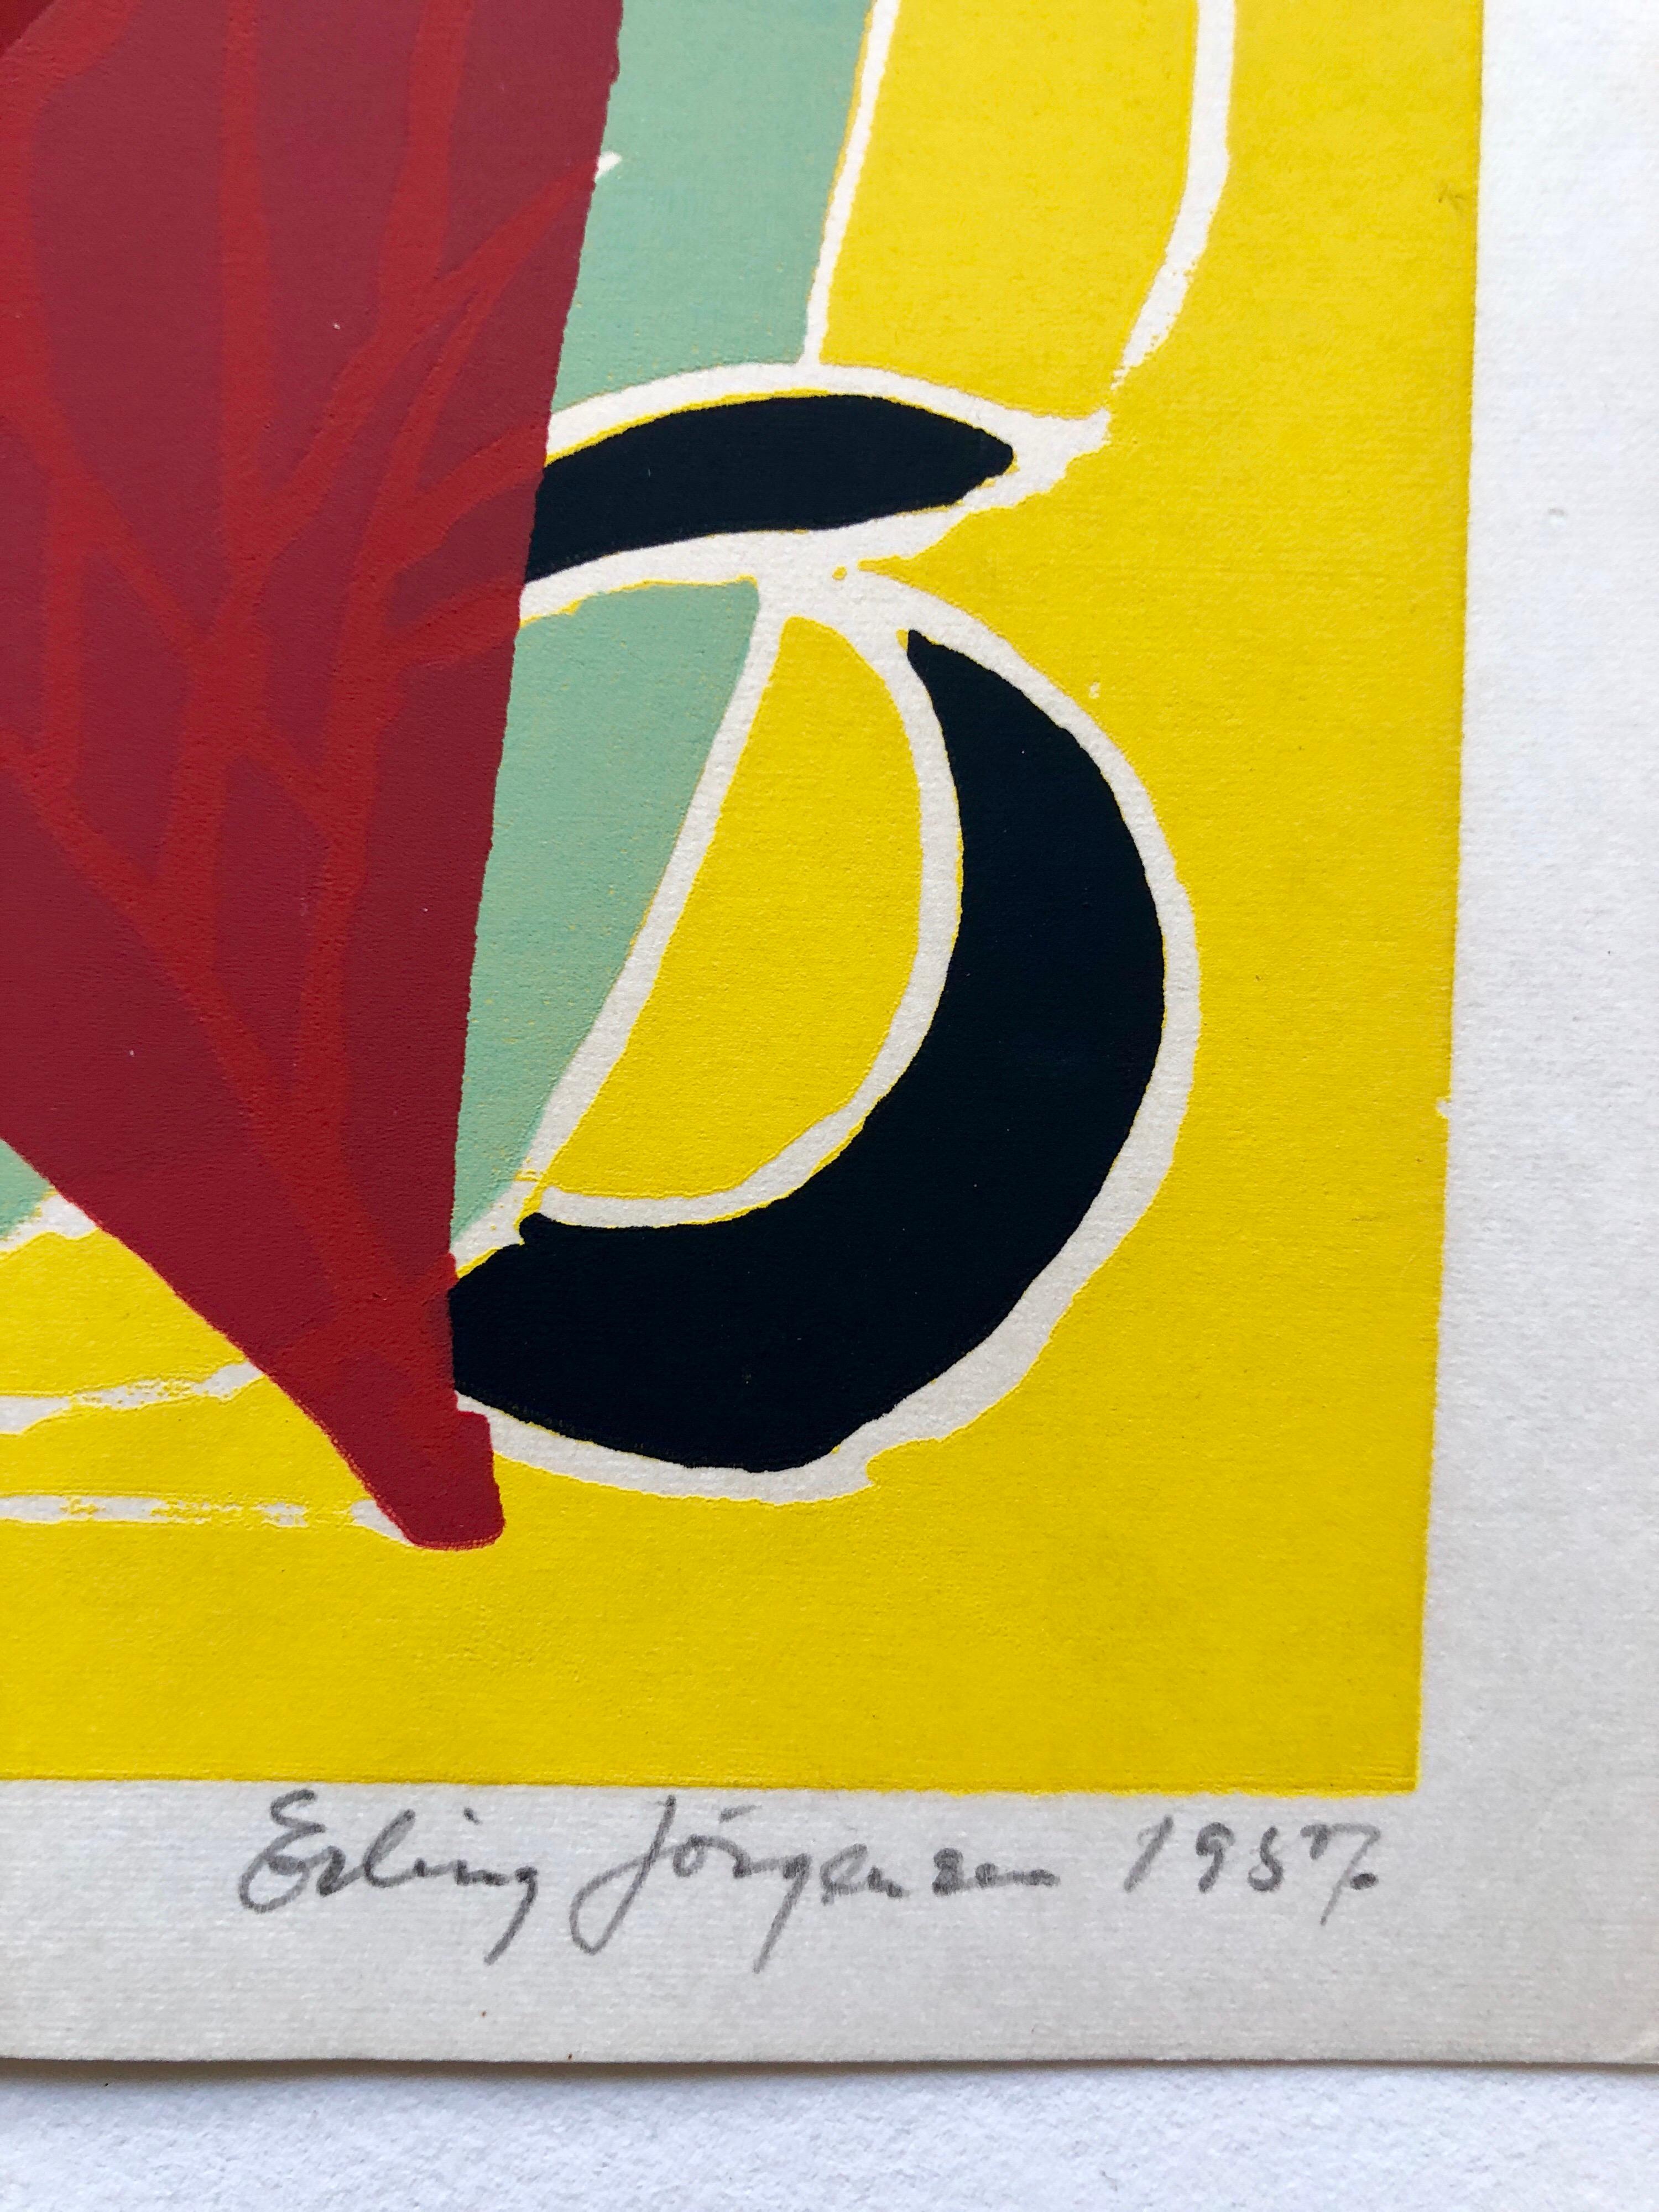 Cobra-Künstler Siebdruck Serigraphie 1950er Jahre leuchtend farbenfrohe, abstrakte, handsigniert – Print von Erling Jorgensen